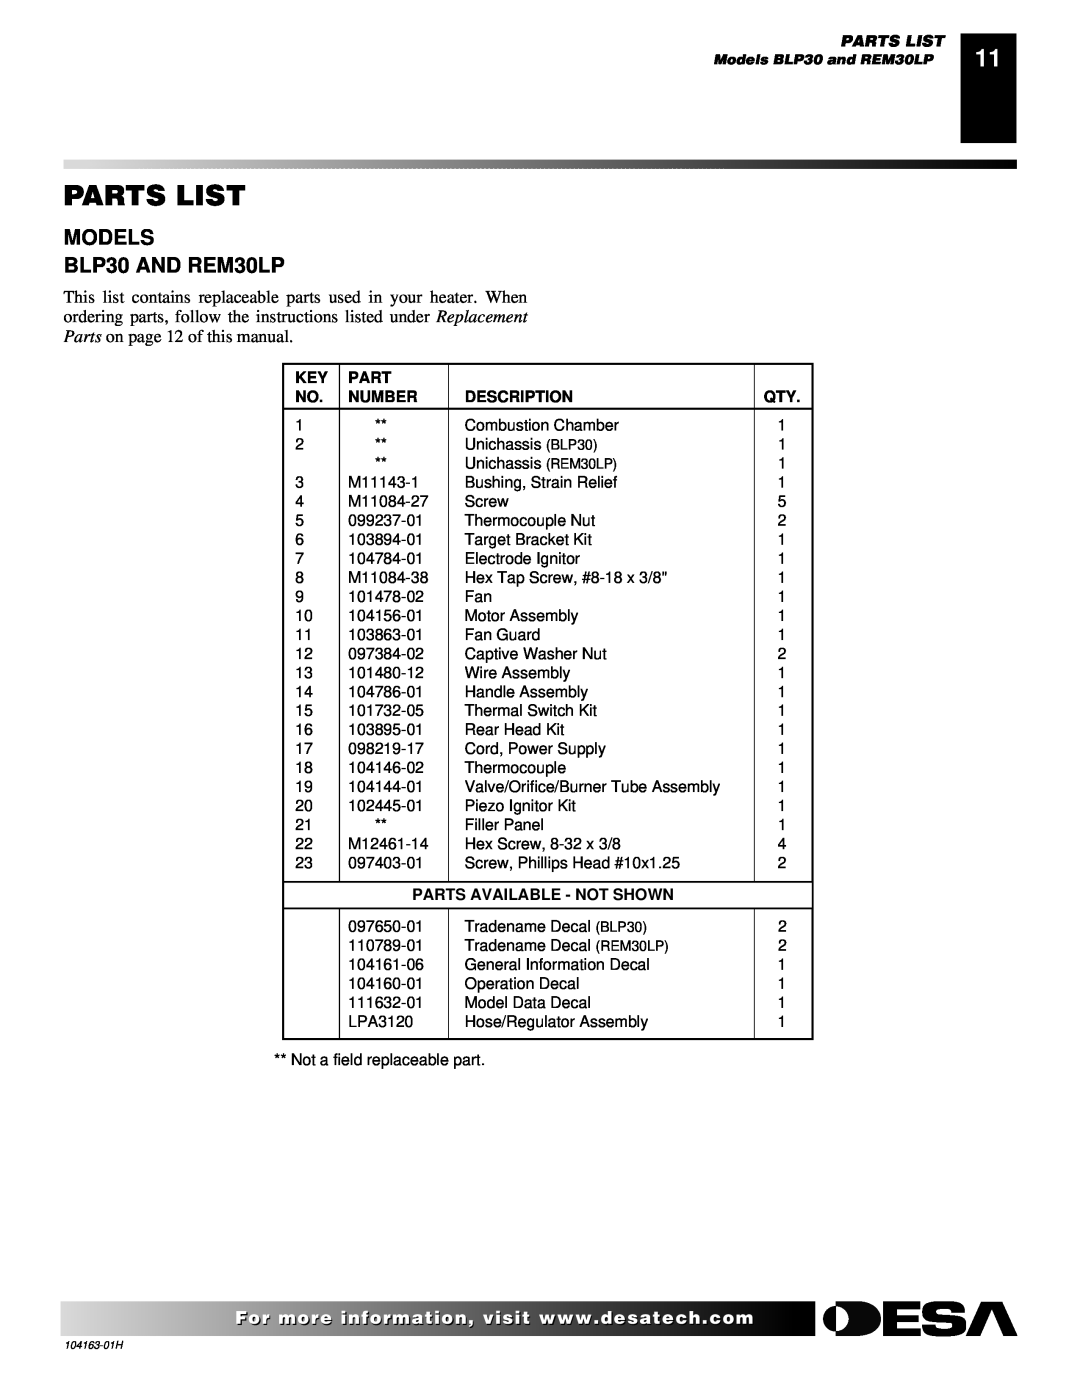 Desa REM30LP owner manual Parts List, Number, Description, Parts Available - Not Shown 